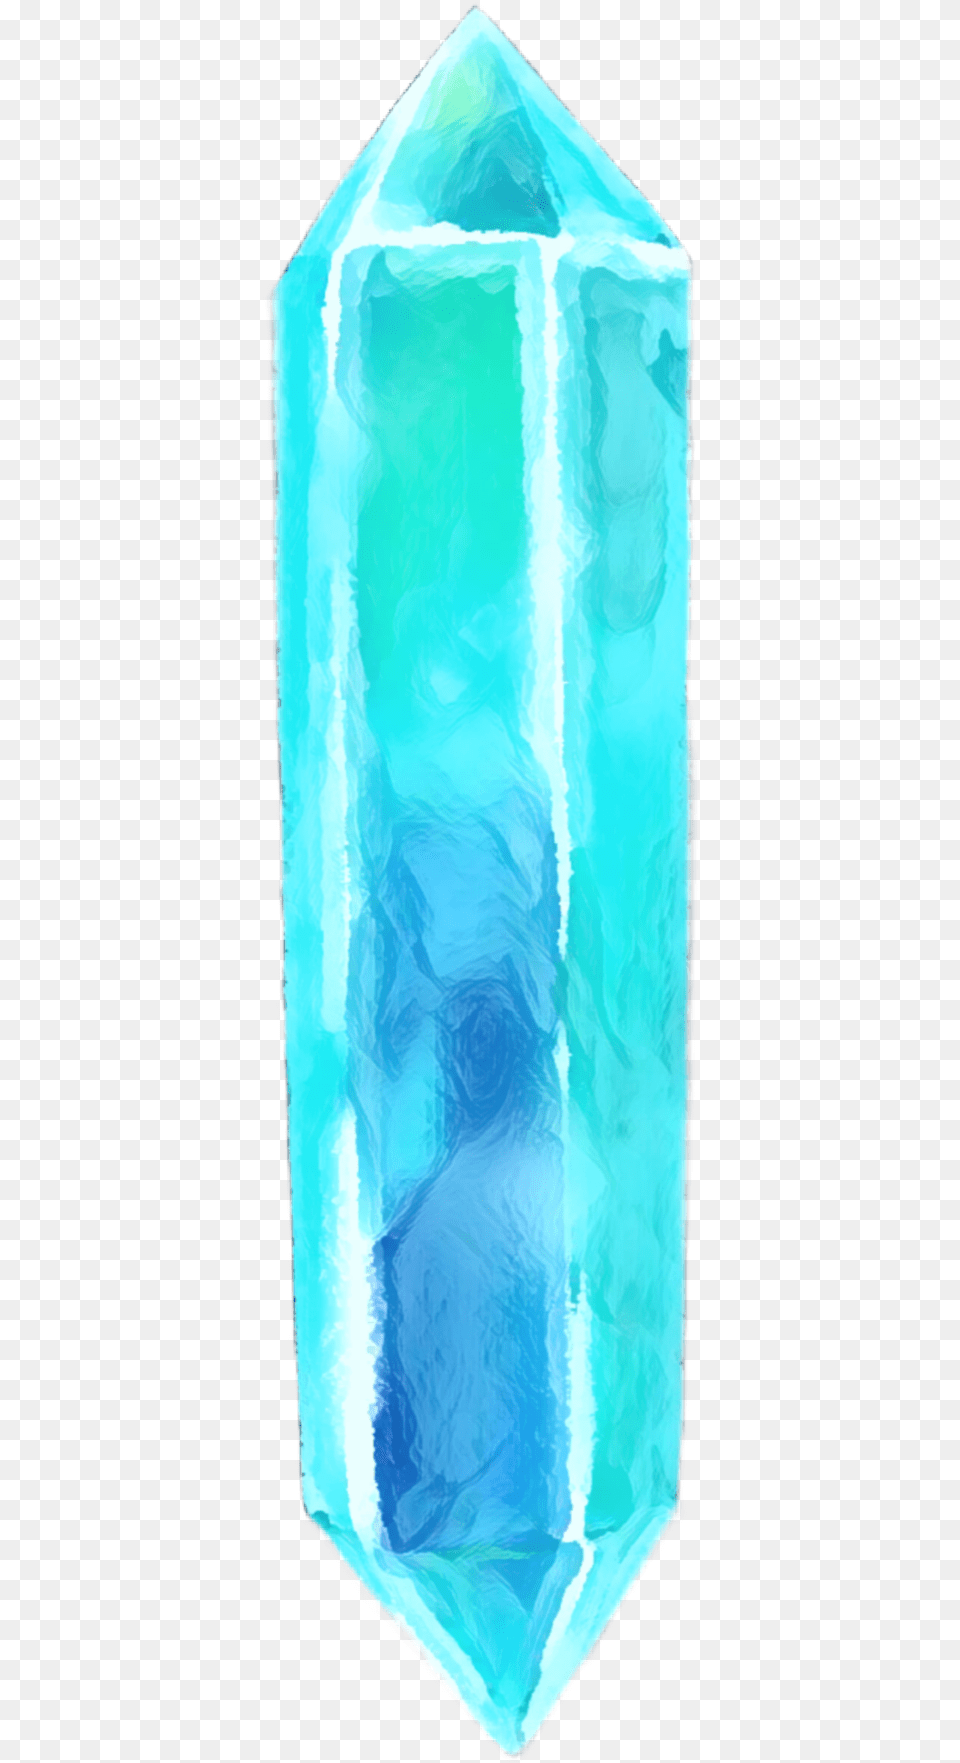 Ice Crystal Icecrystal Blue Iceblue Iceshard Garment Bag, Mineral, Quartz, Jar, Turquoise Png Image